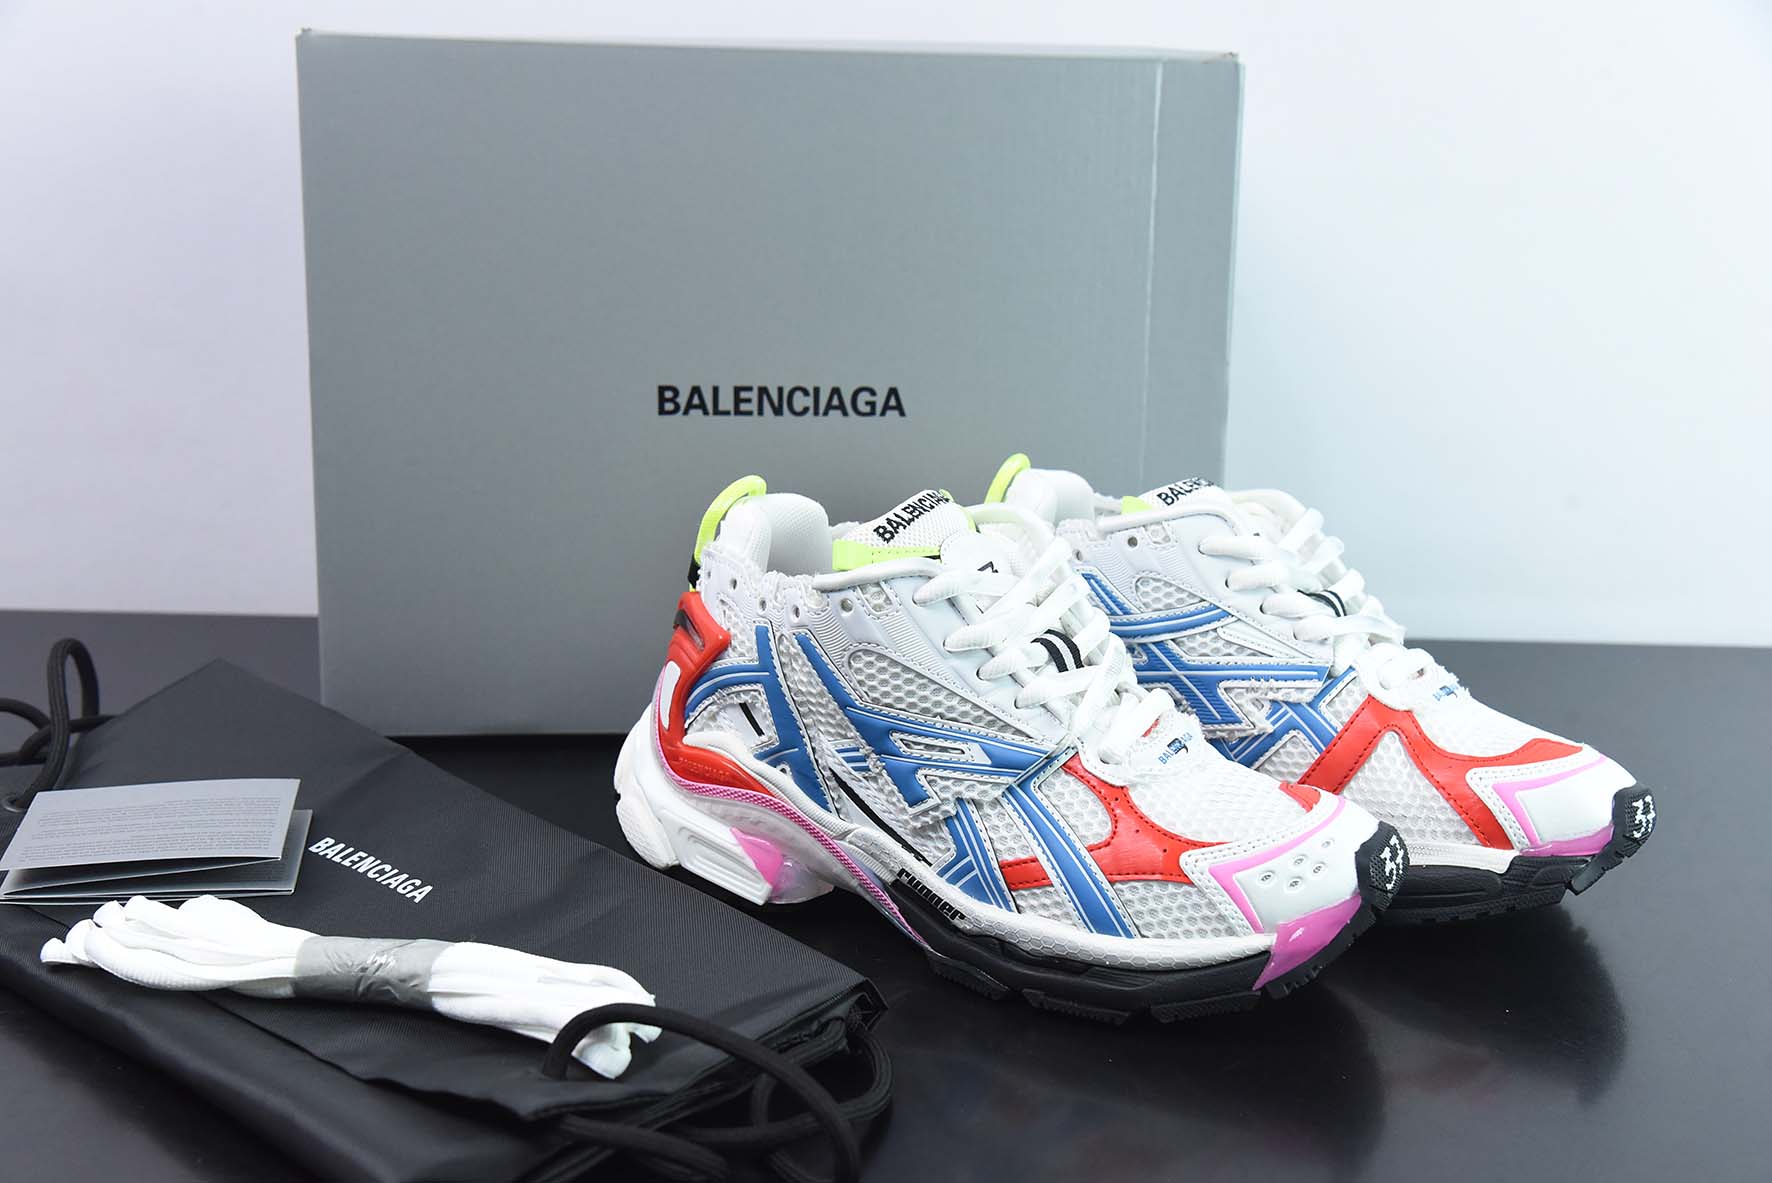 巴黎世家七代 7.0 BALENCIAGA Runner Sneaker慢跑系列低帮复古野跑潮流运动鞋老爹鞋